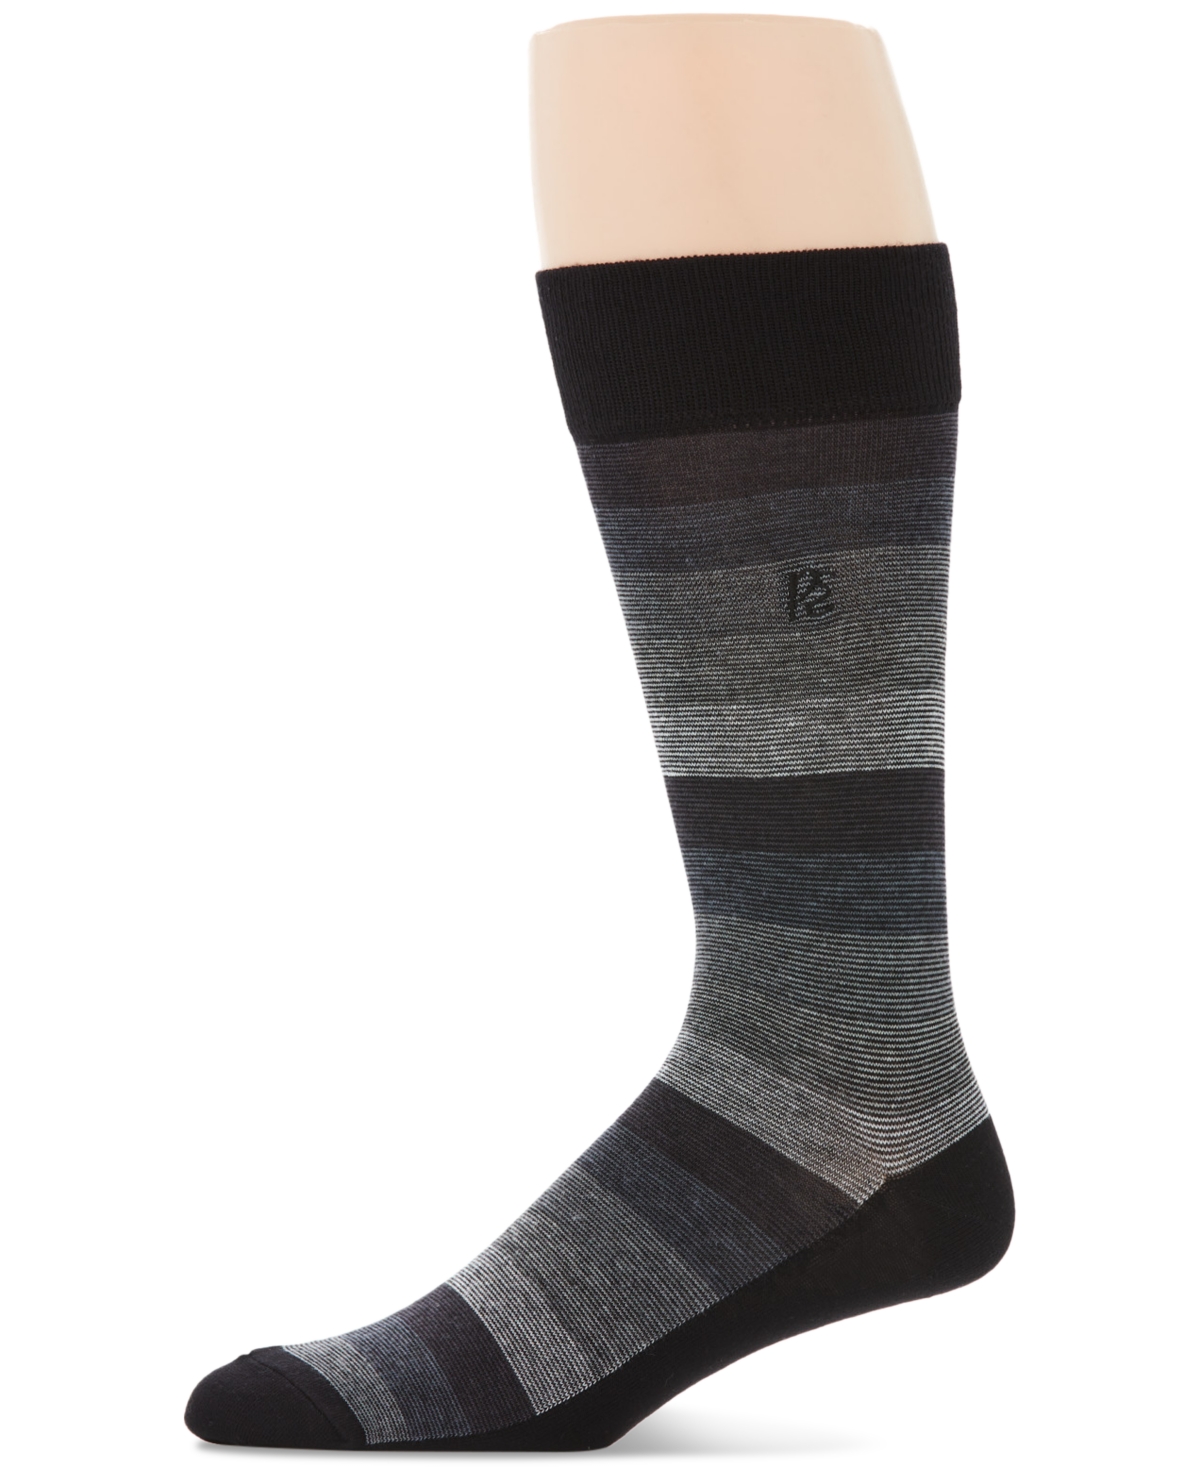 Men's Ombre Stripe Dress Socks - Charcoal